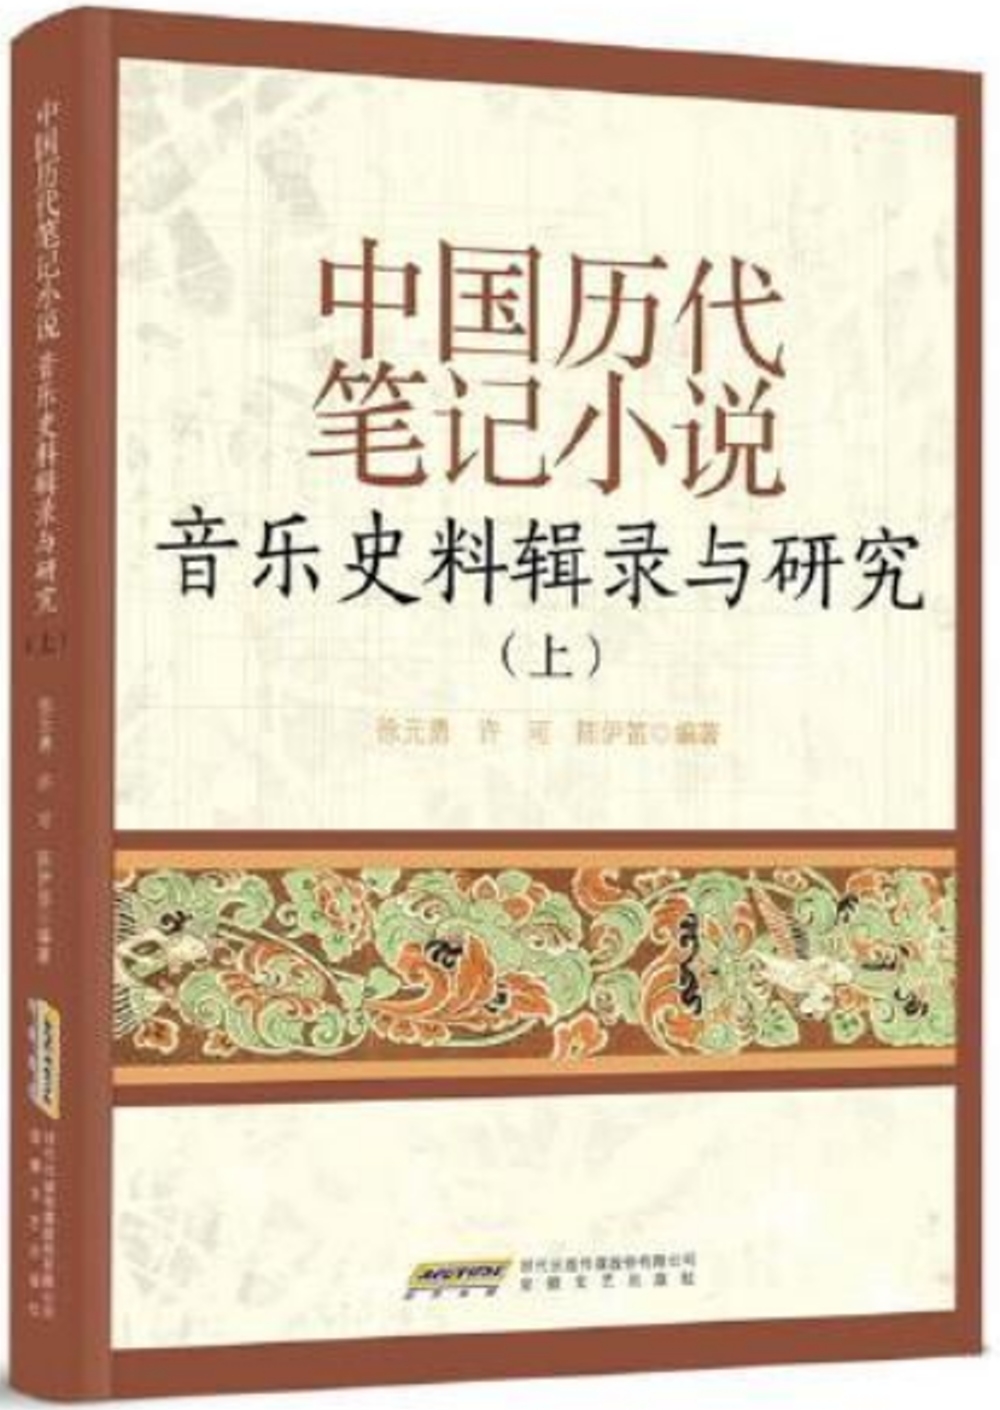 中國歷代筆記小說音樂史料輯錄與研究(上)